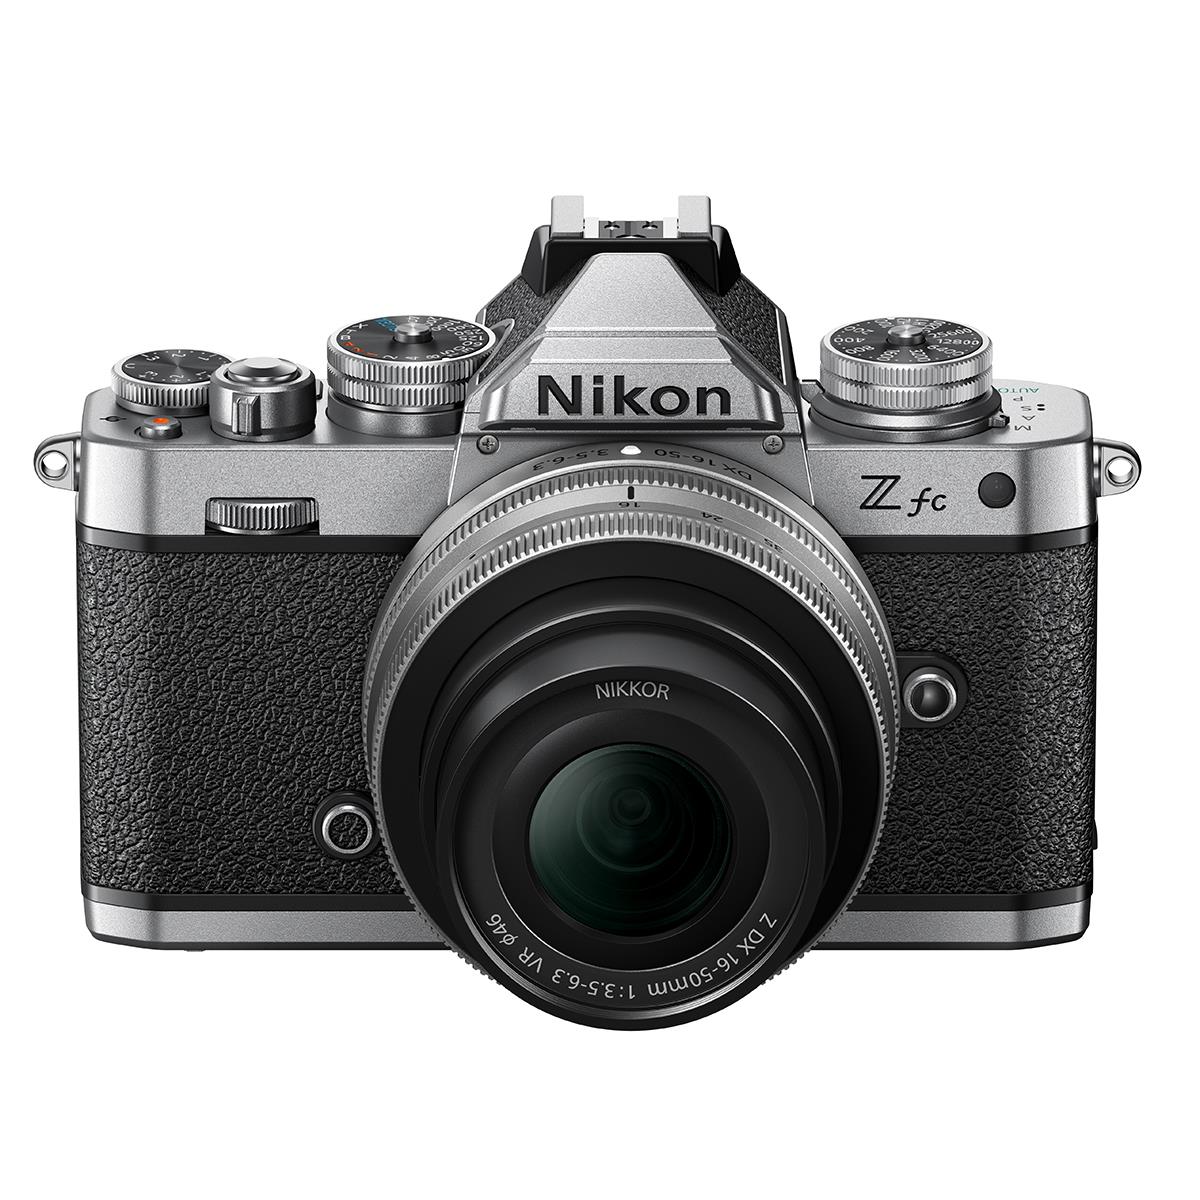 

Nikon Z fc DX-Format Camera with NIKKOR Z DX 16-50mm f/3.5-6.3 VR Lens, Silver